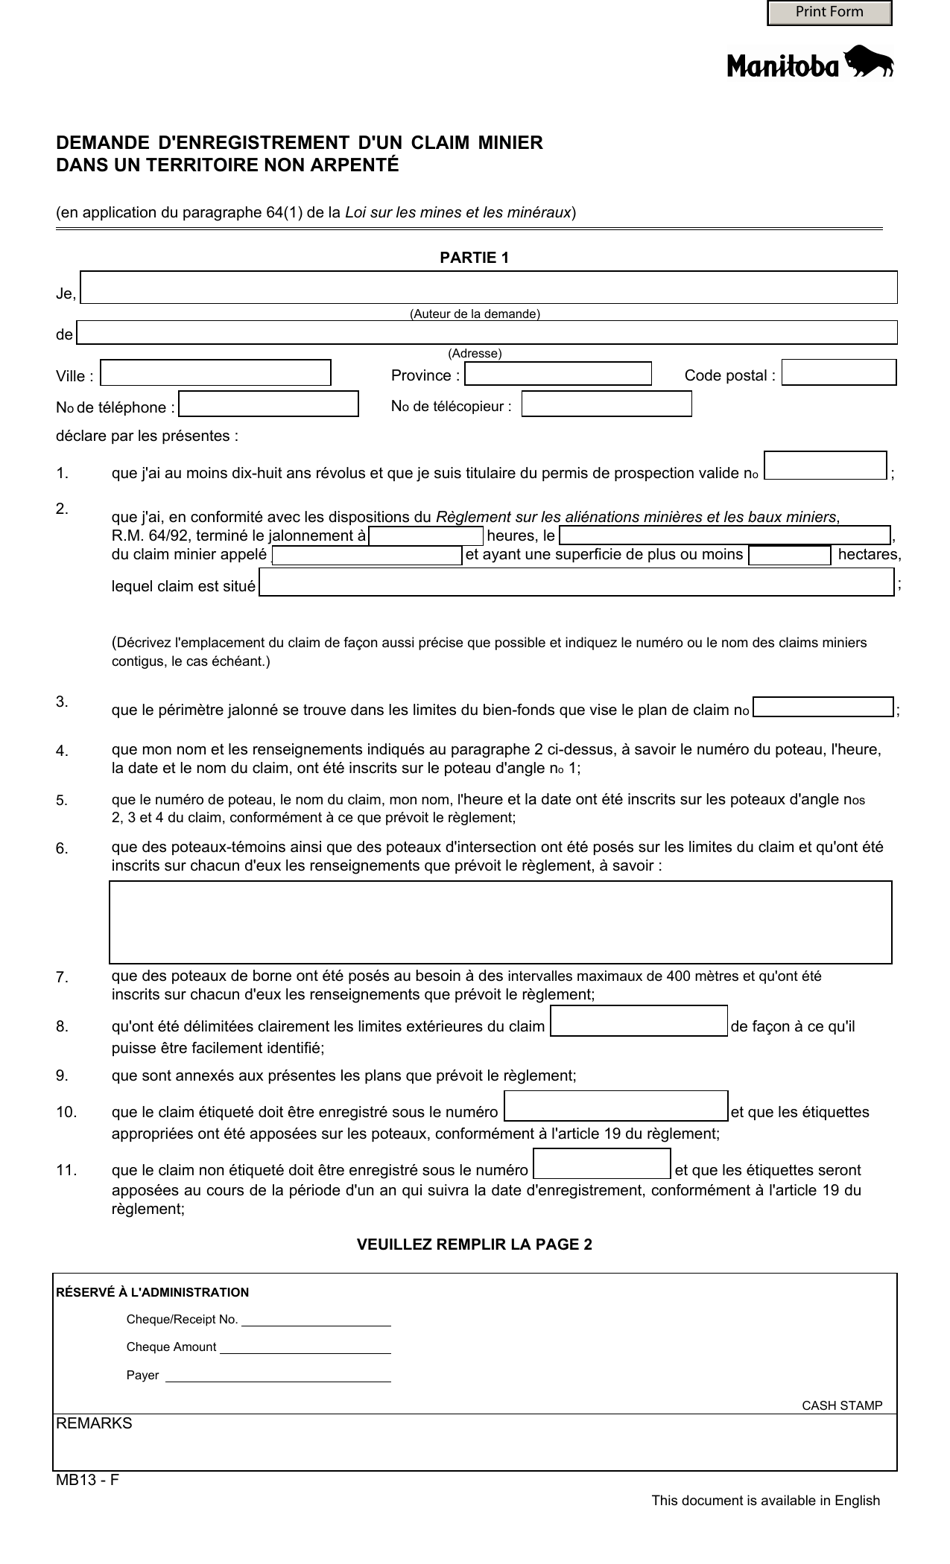 Forme MB13 Demande Denregistrement Dun Claim Minier Dans Un Territoire Non Arpente - Manitoba, Canada (French), Page 1